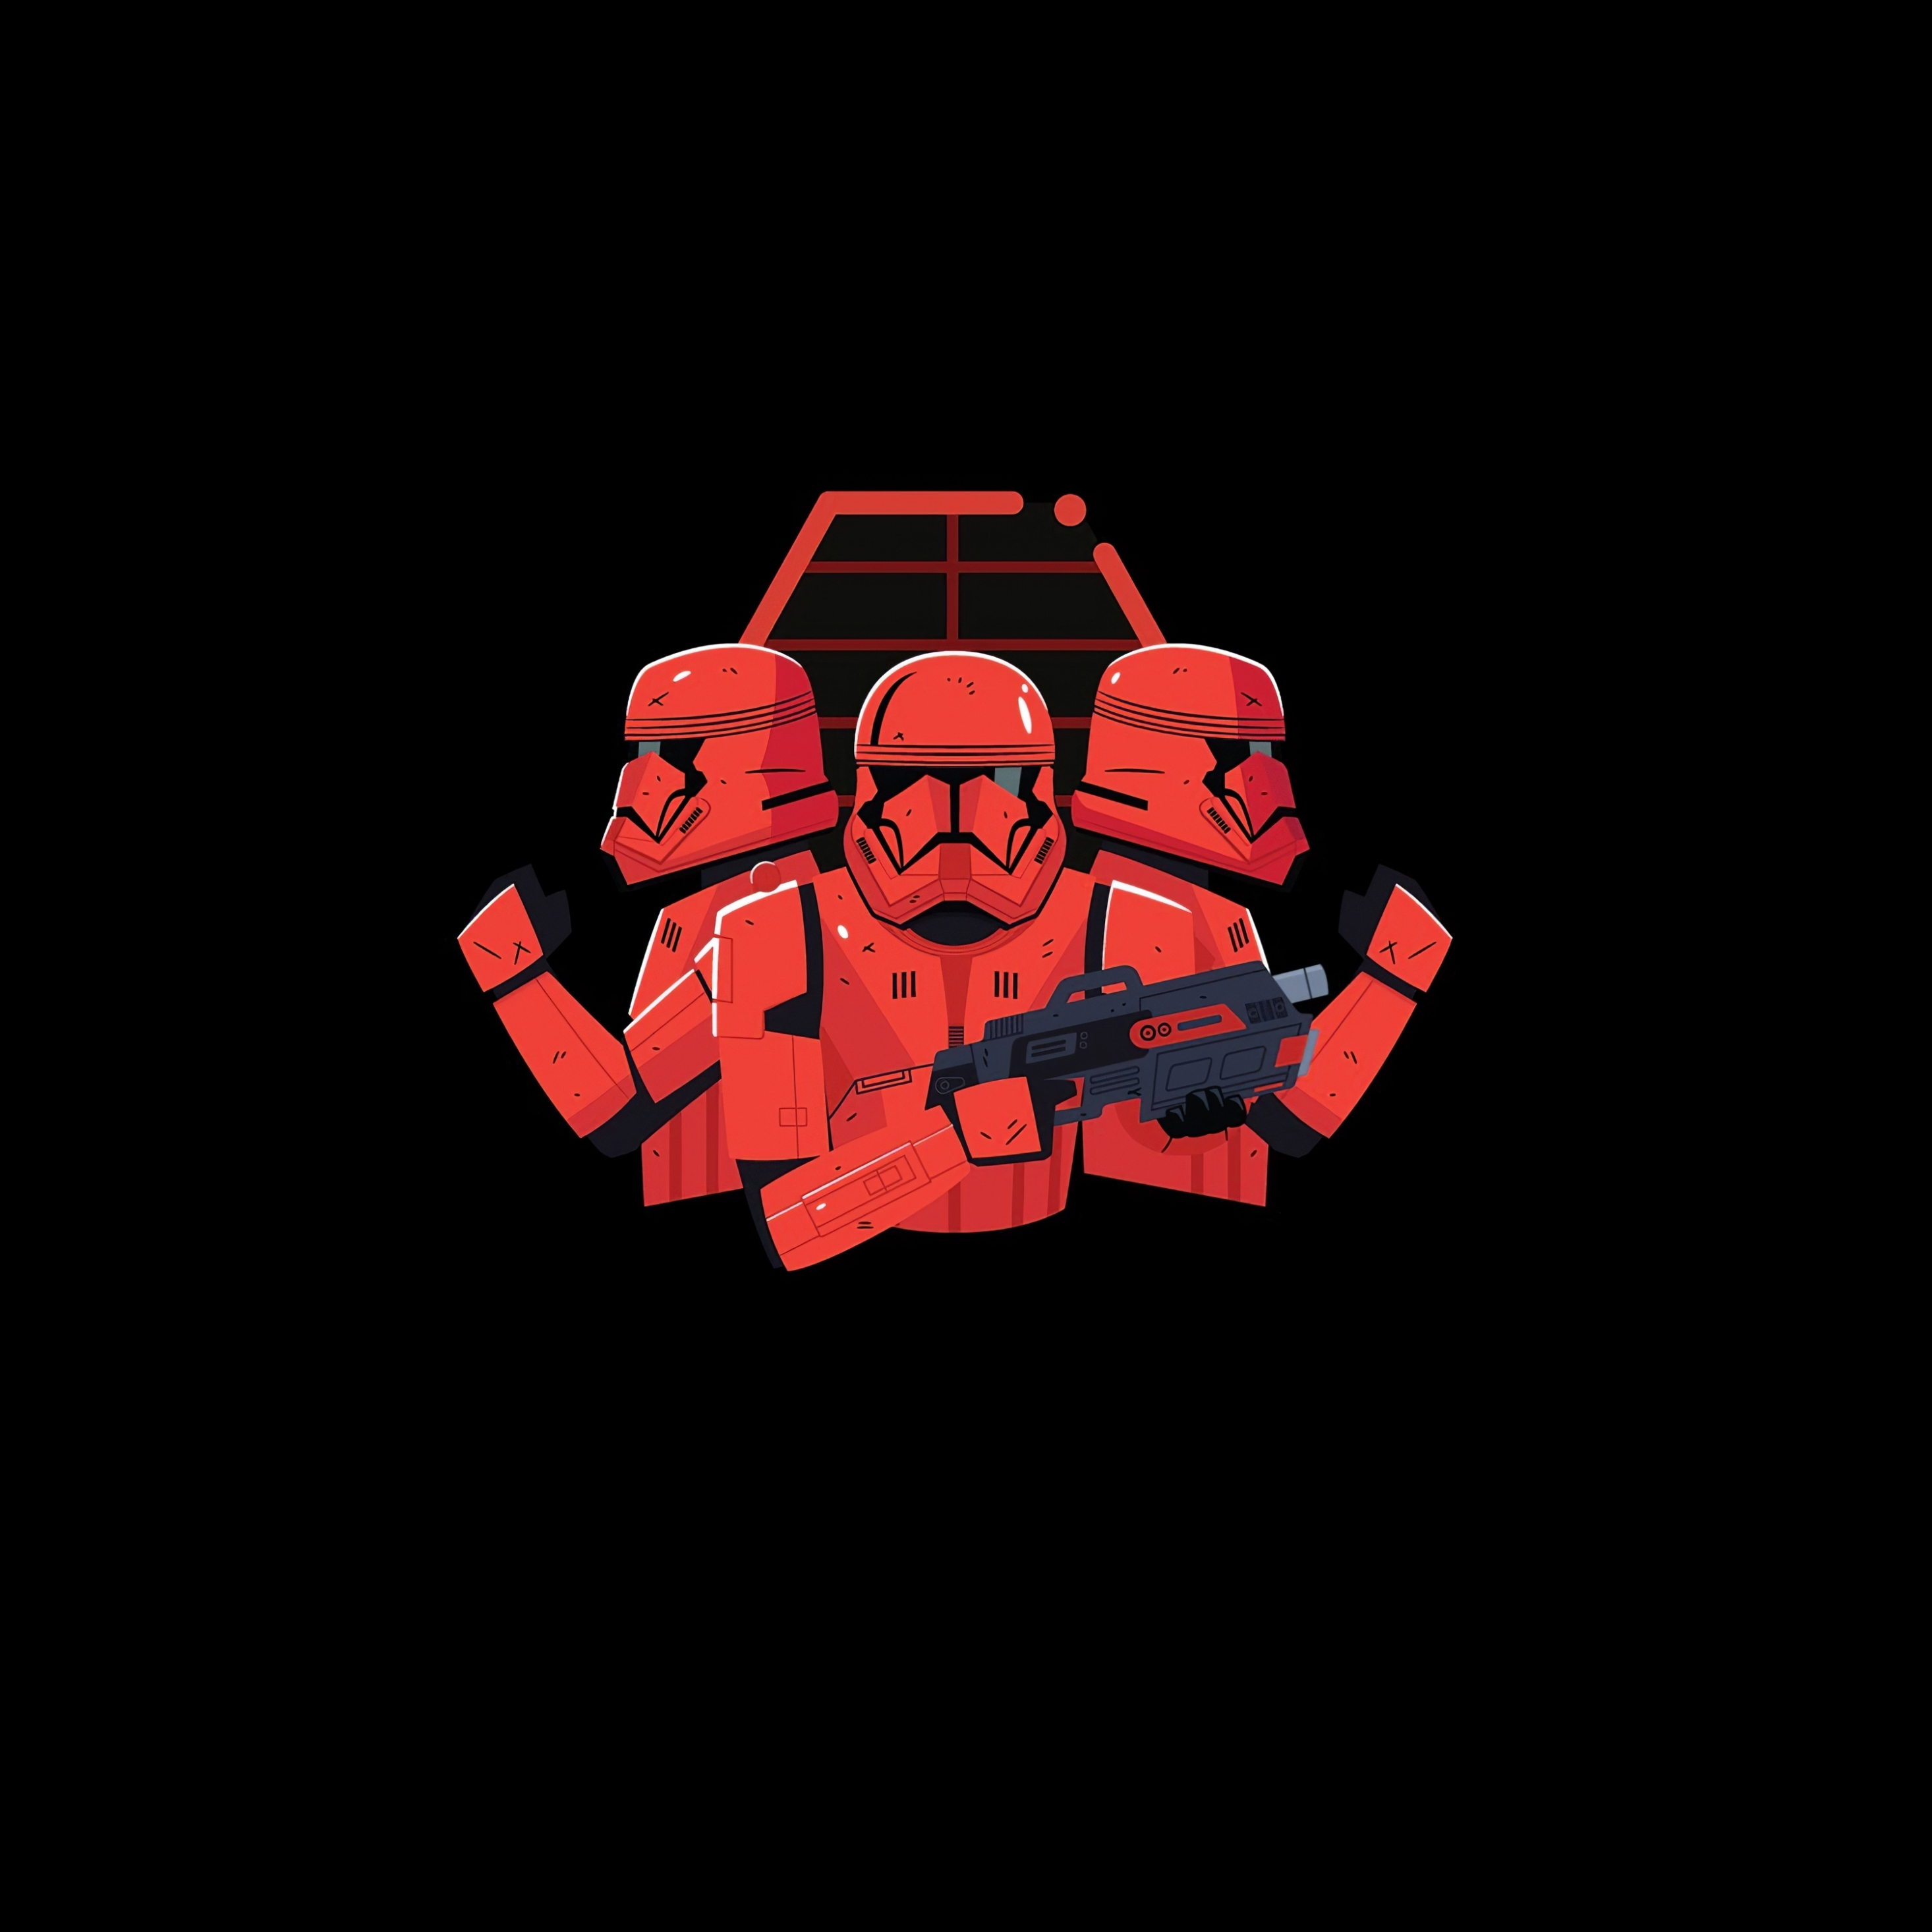 Download 2932x2932 Wallpaper Star Wars Stormtrooper Minimal Art Ipad Pro Retina 2932x2932 Hd Image Background 24070